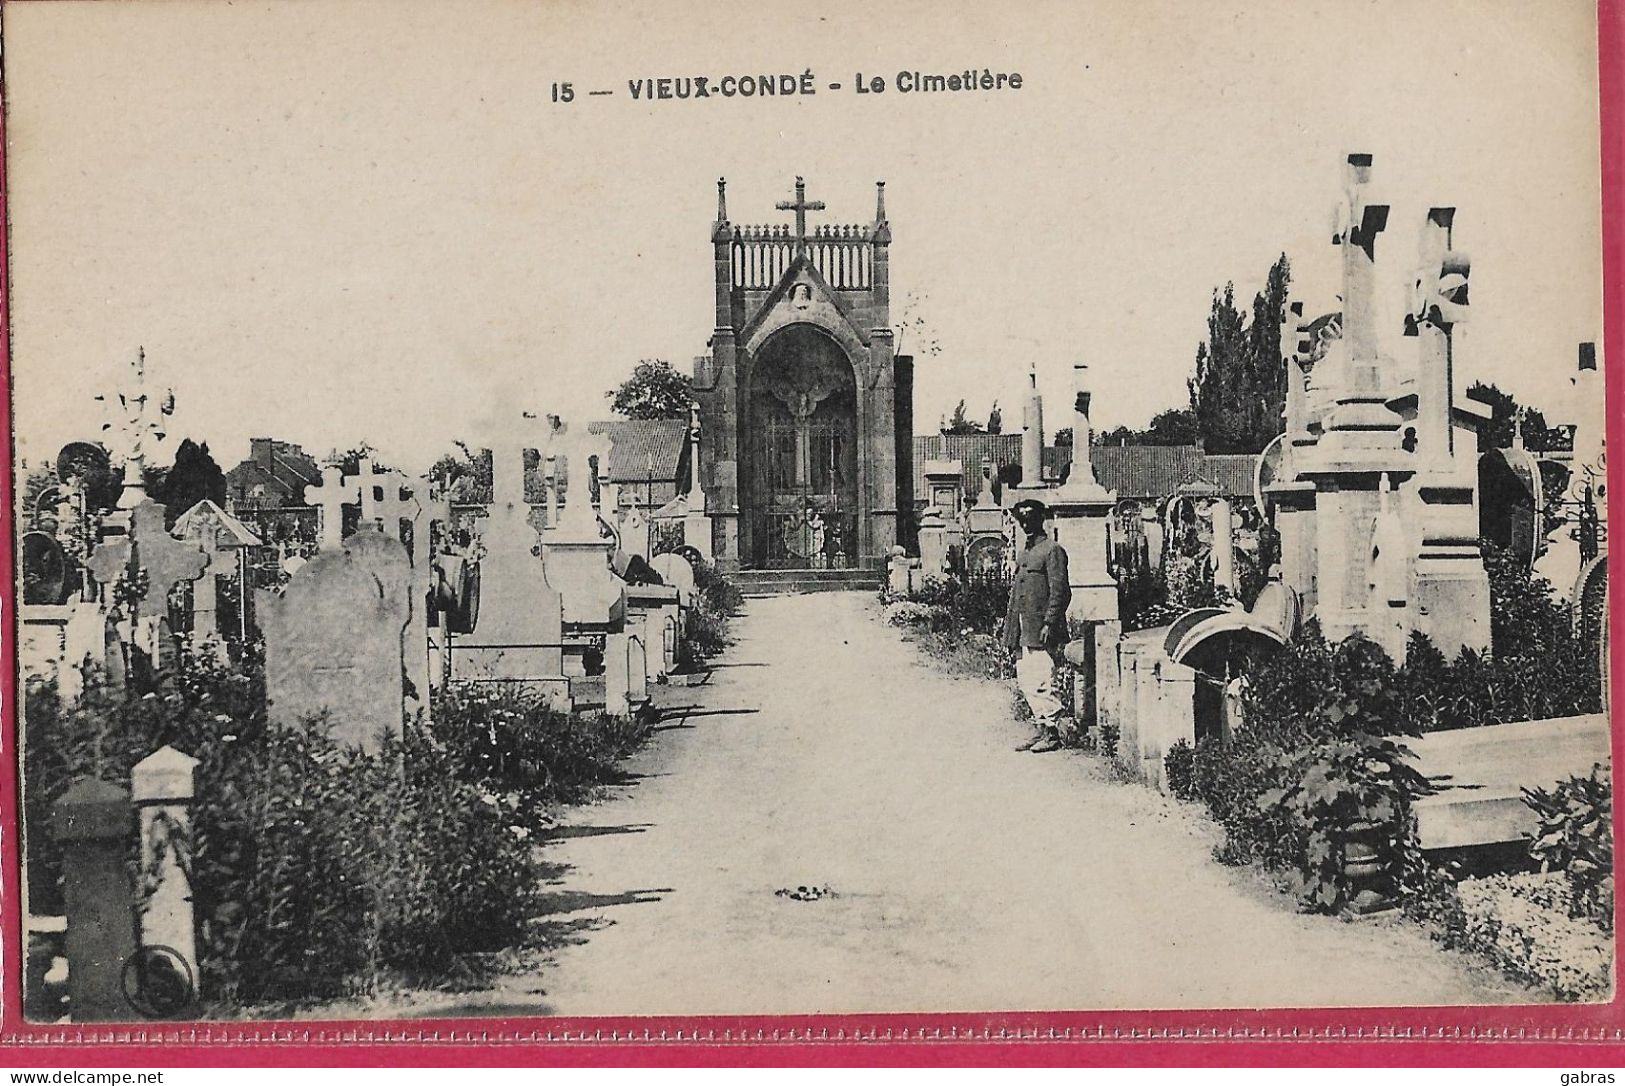 VIEUX CONDE - Vieux Conde